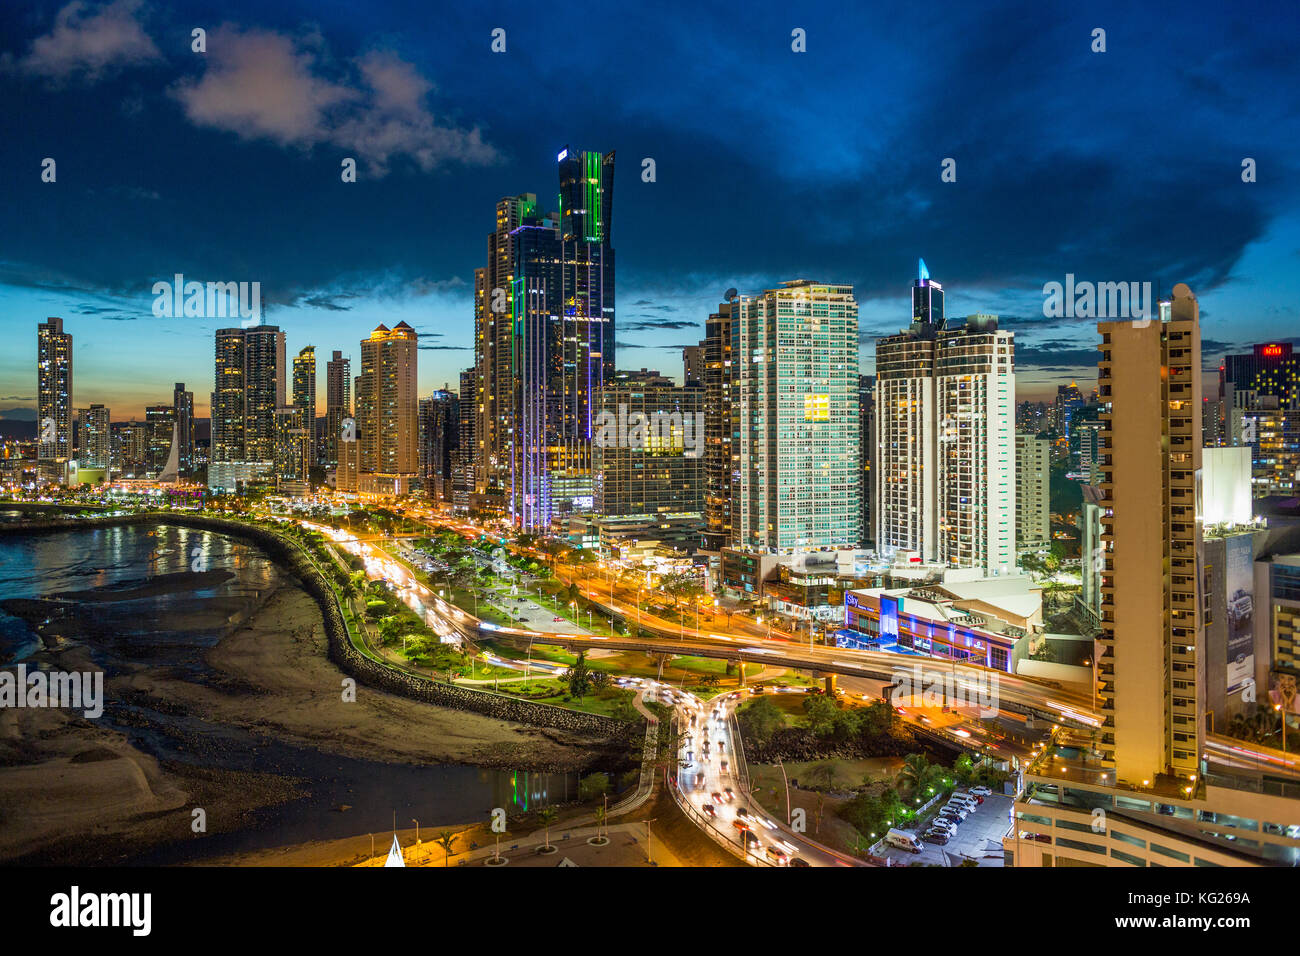 Skyline della città illuminata al crepuscolo, Panama City, Panama America Centrale Foto Stock